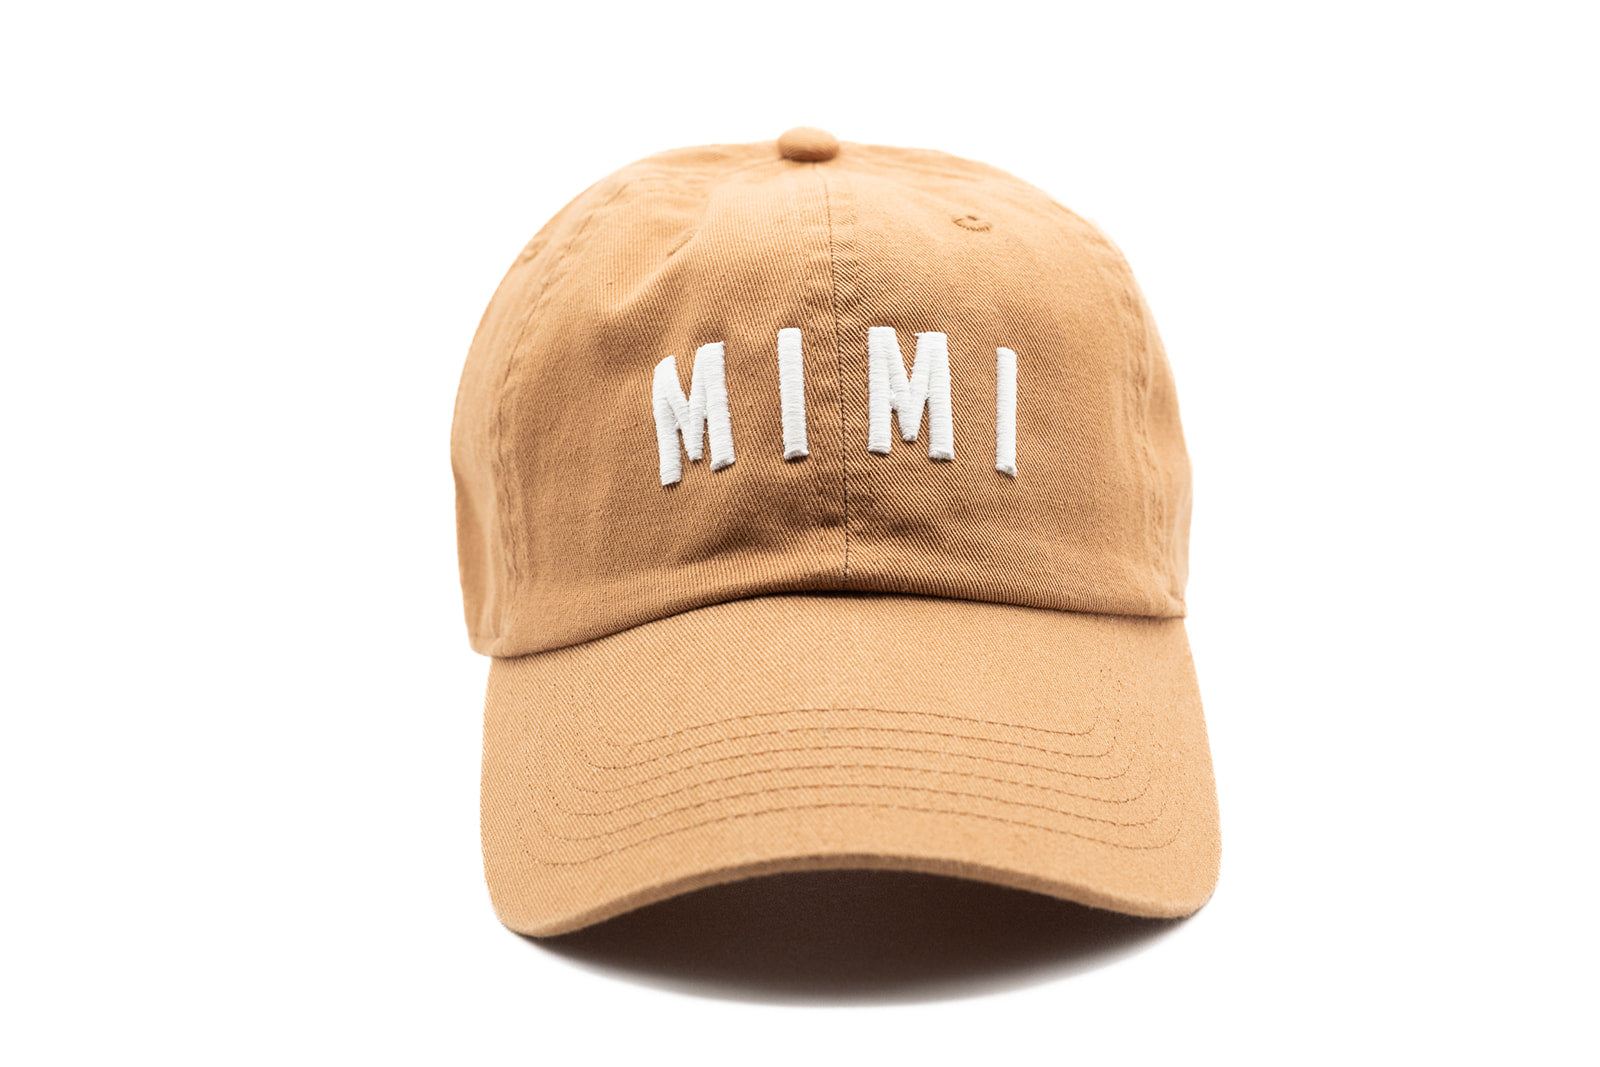 Terra Cotta Mimi Hat